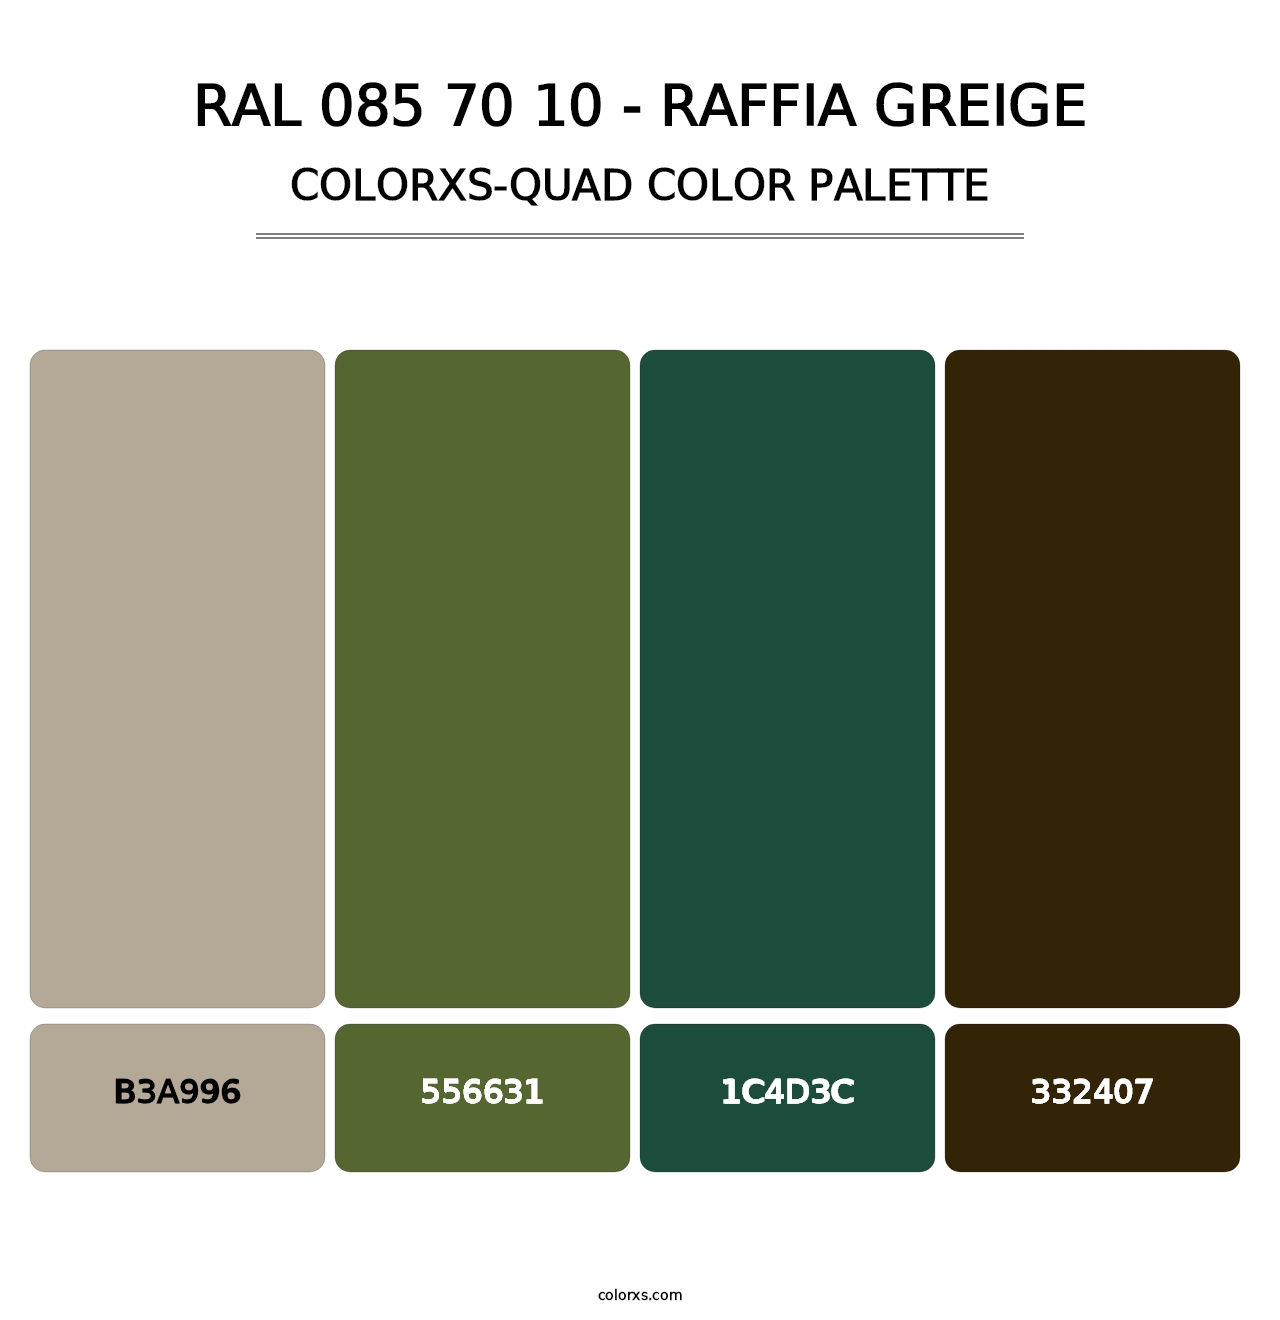 RAL 085 70 10 - Raffia Greige - Colorxs Quad Palette